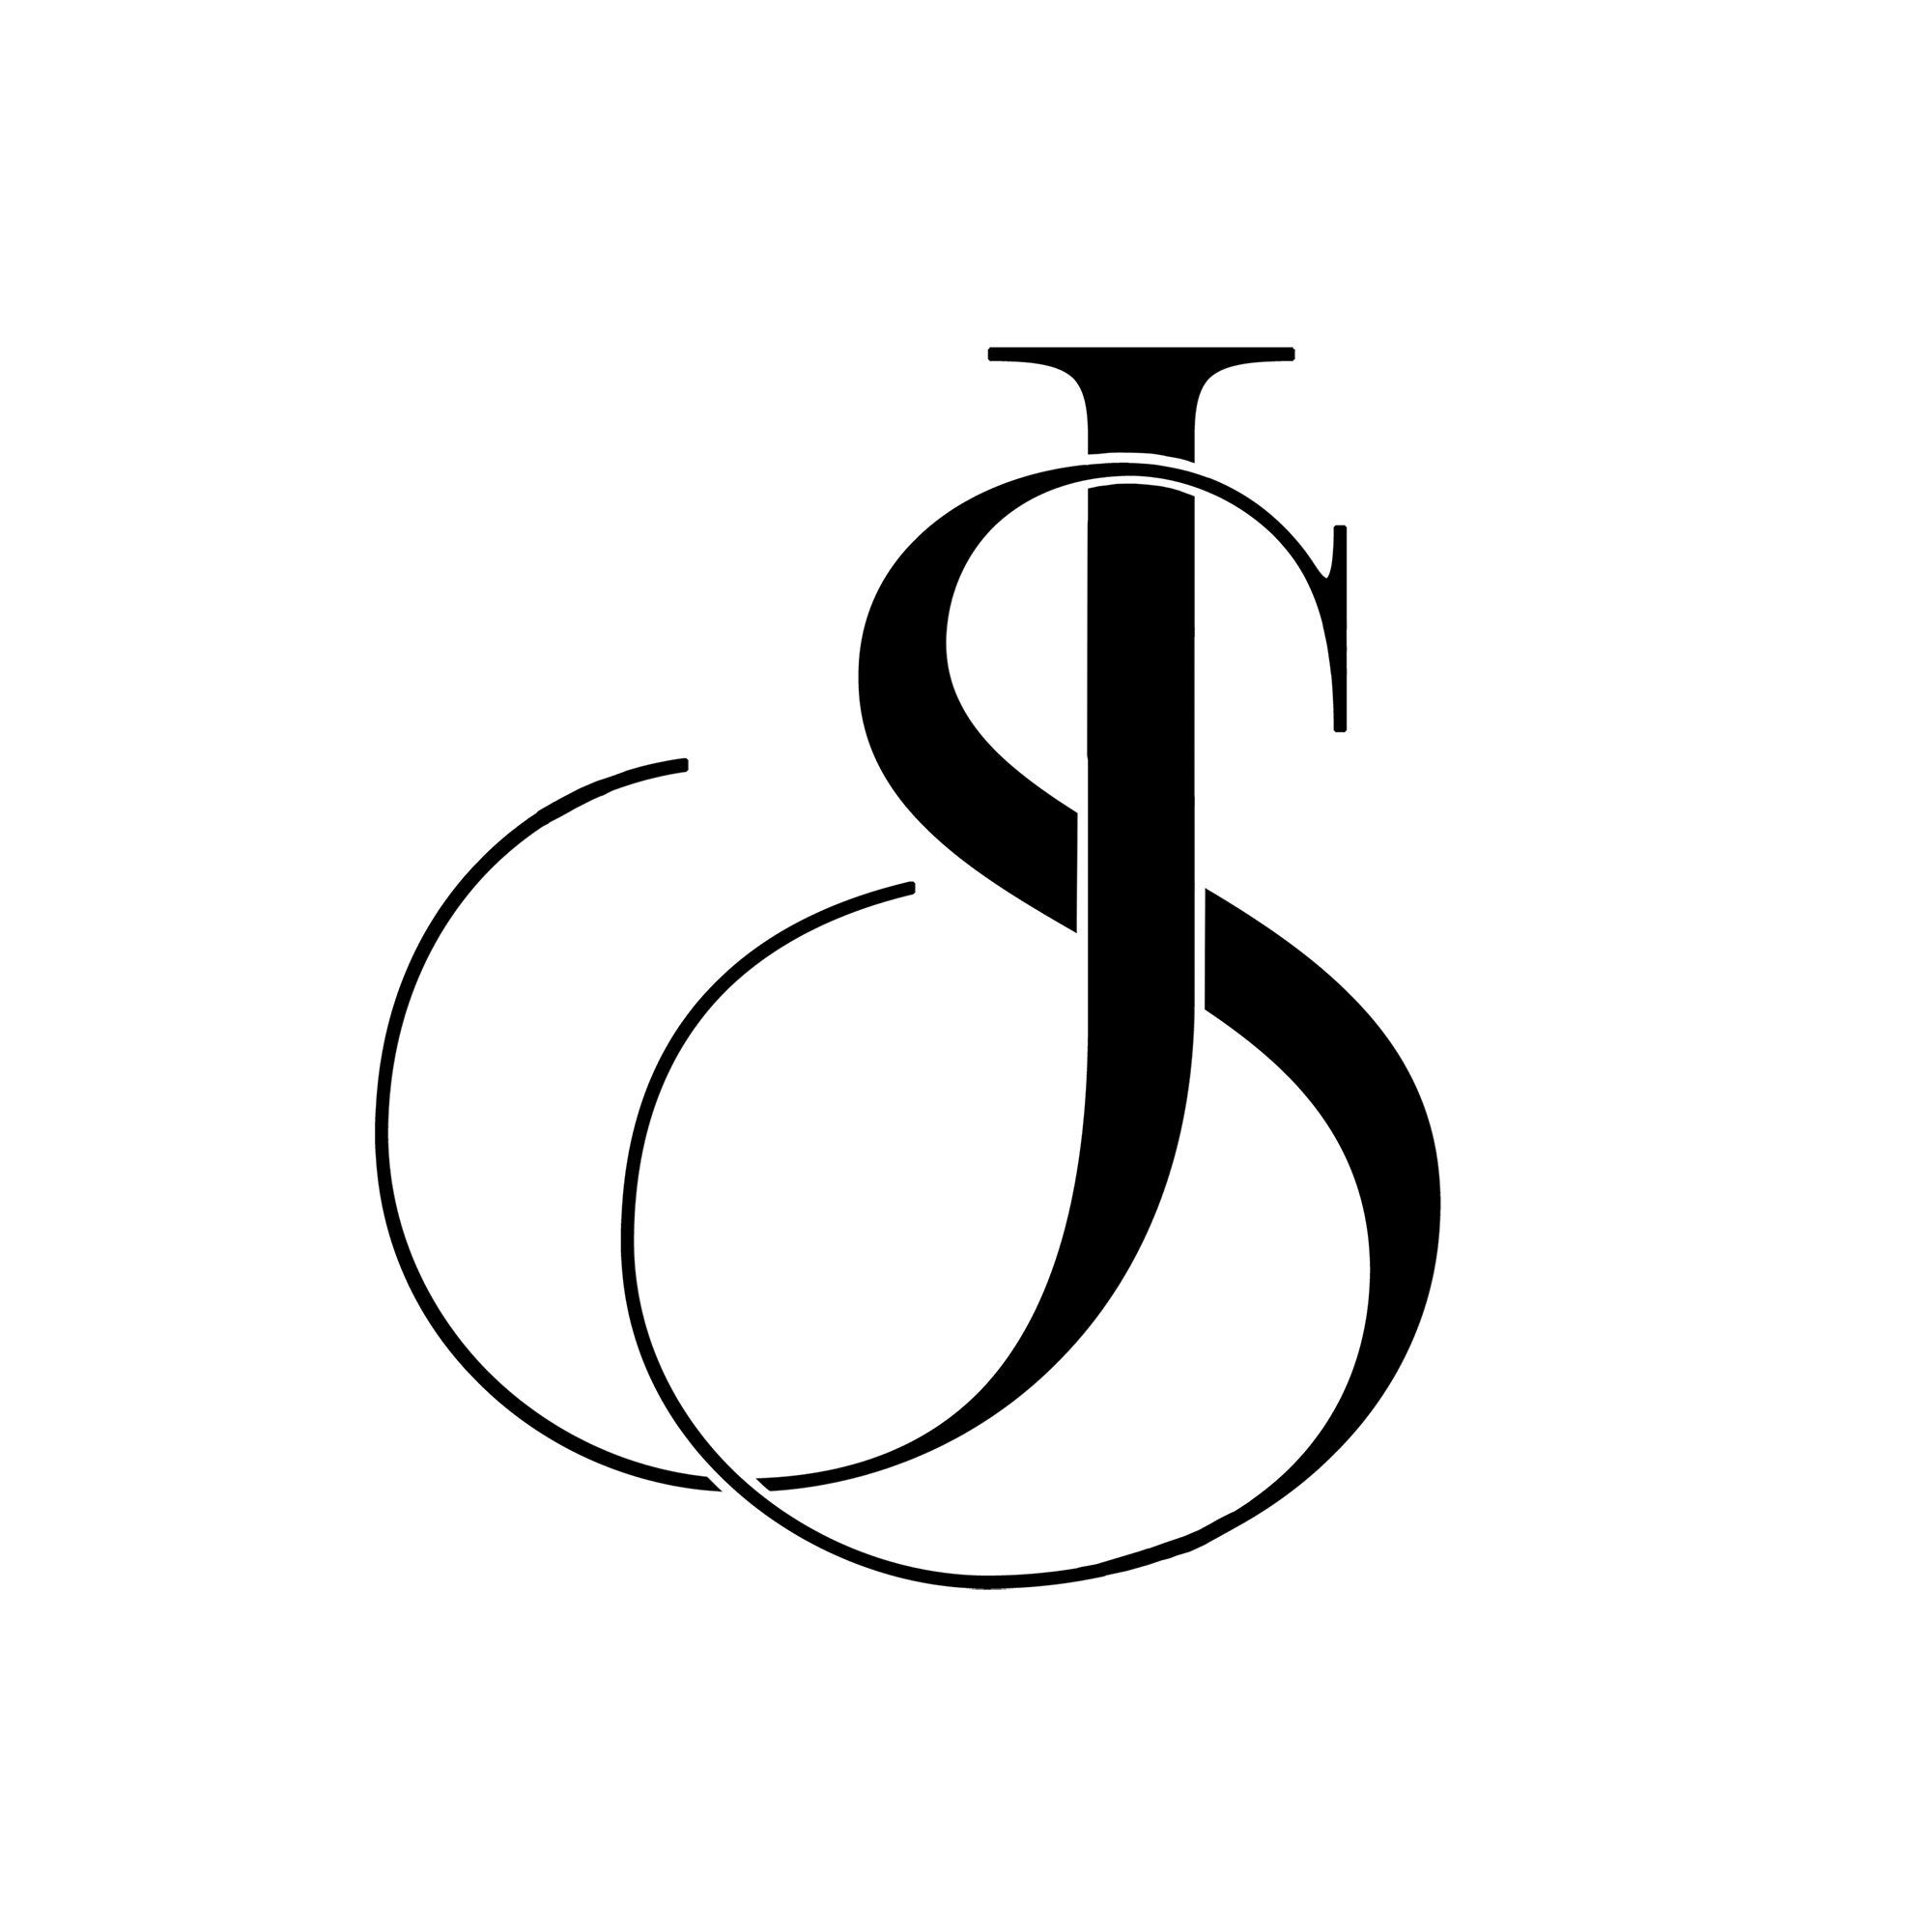 Js Monogram Logo Intertwined Uppercase Letter J Letter S